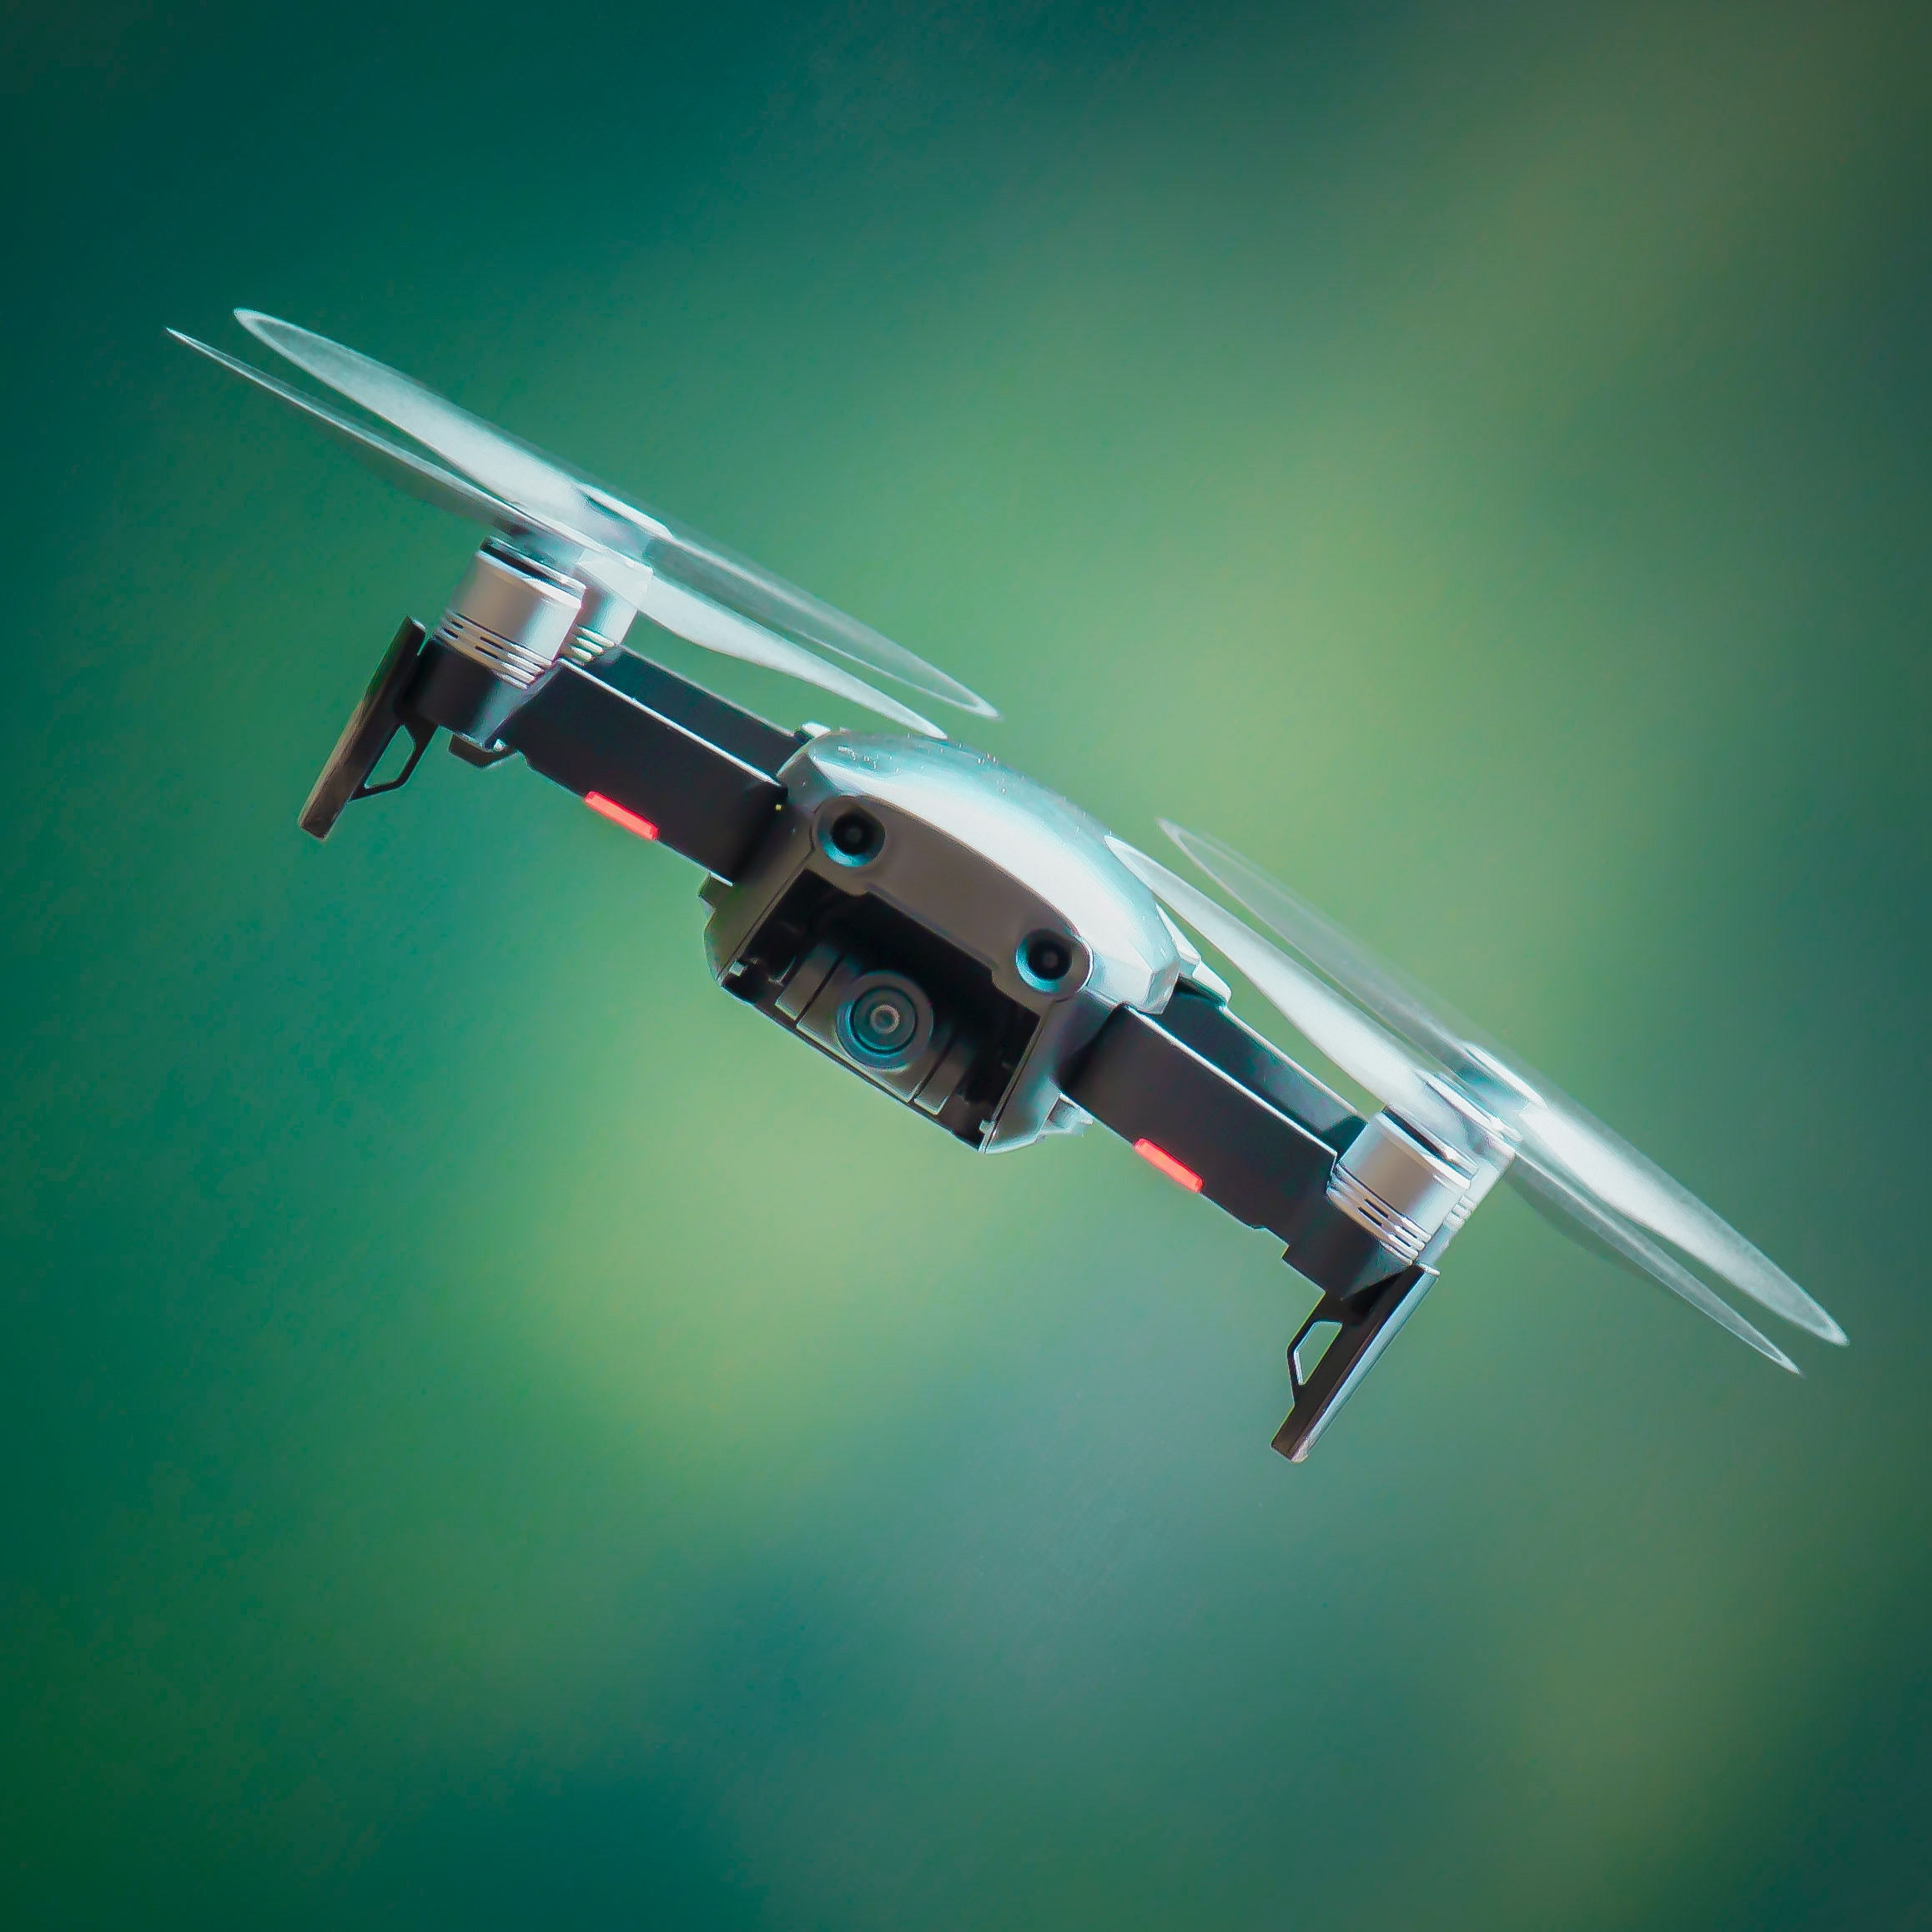 drone flight in turn